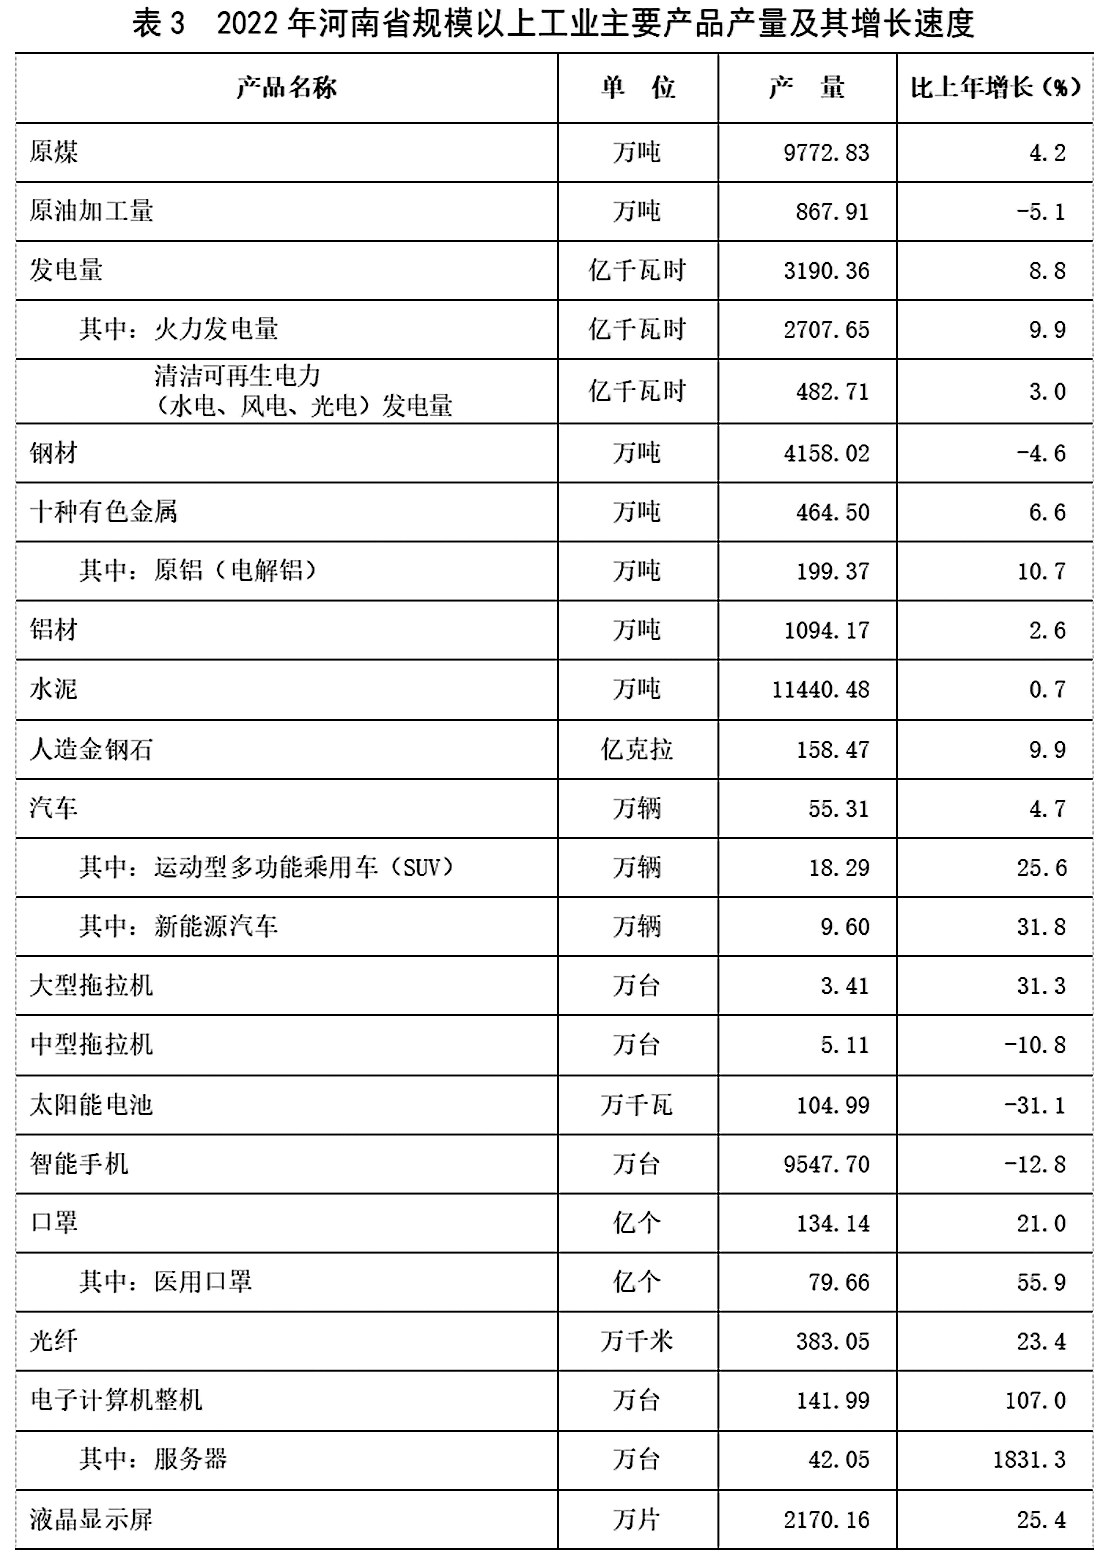  2022年河南省国民经济和社会发展统计公报